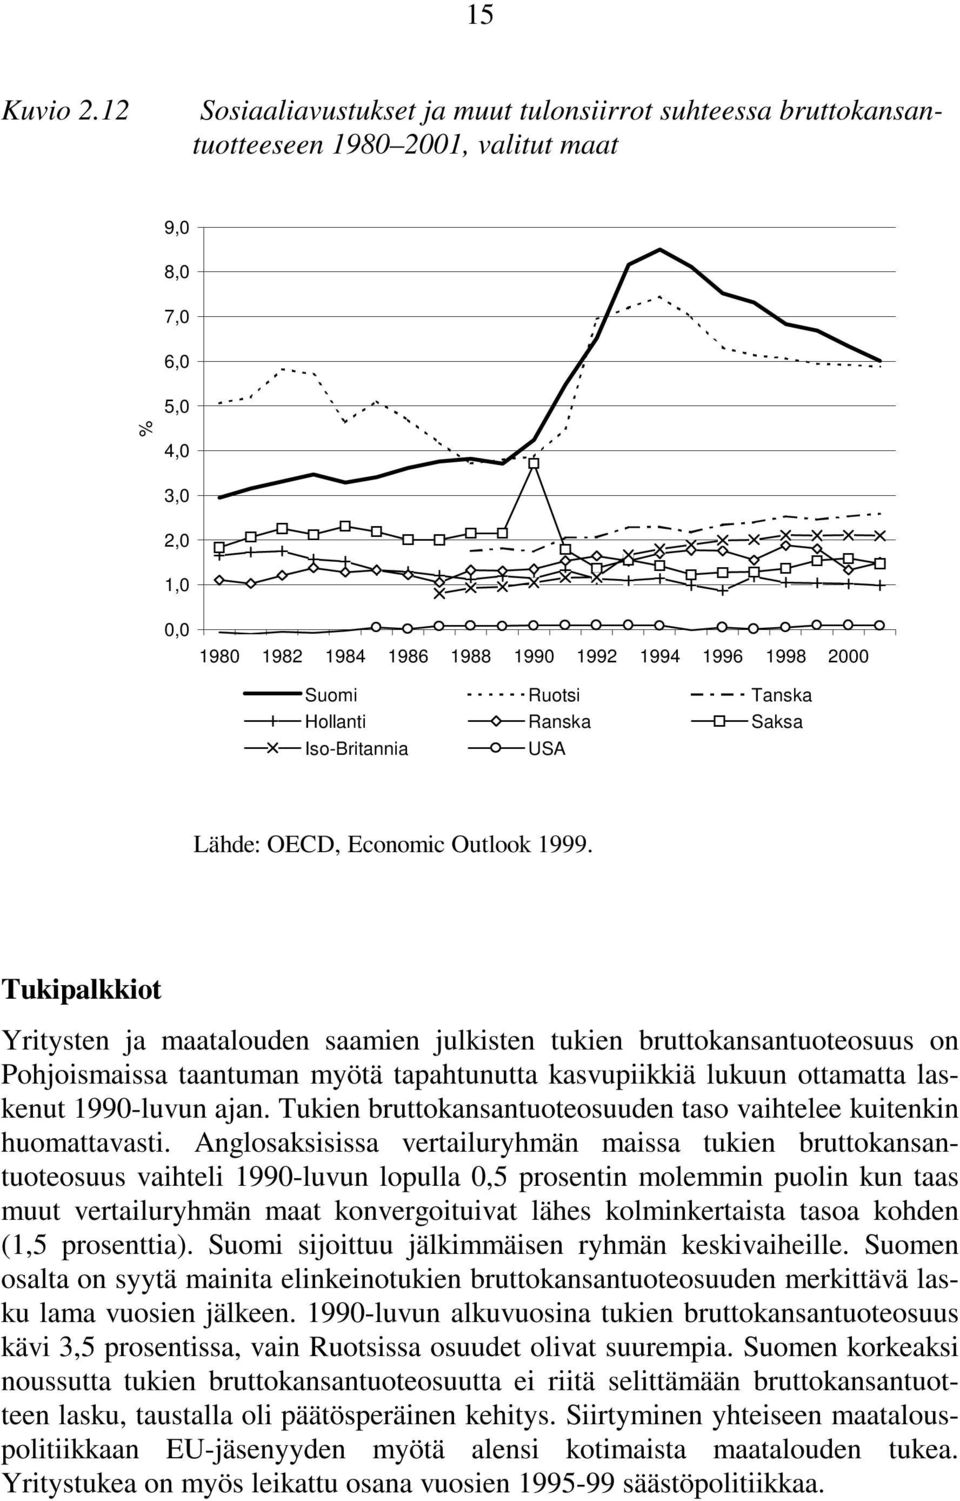 Suomi Ruotsi Tanska Hollanti Ranska Saksa Iso-Britannia USA Lähde: OECD, Economic Outlook 1999.